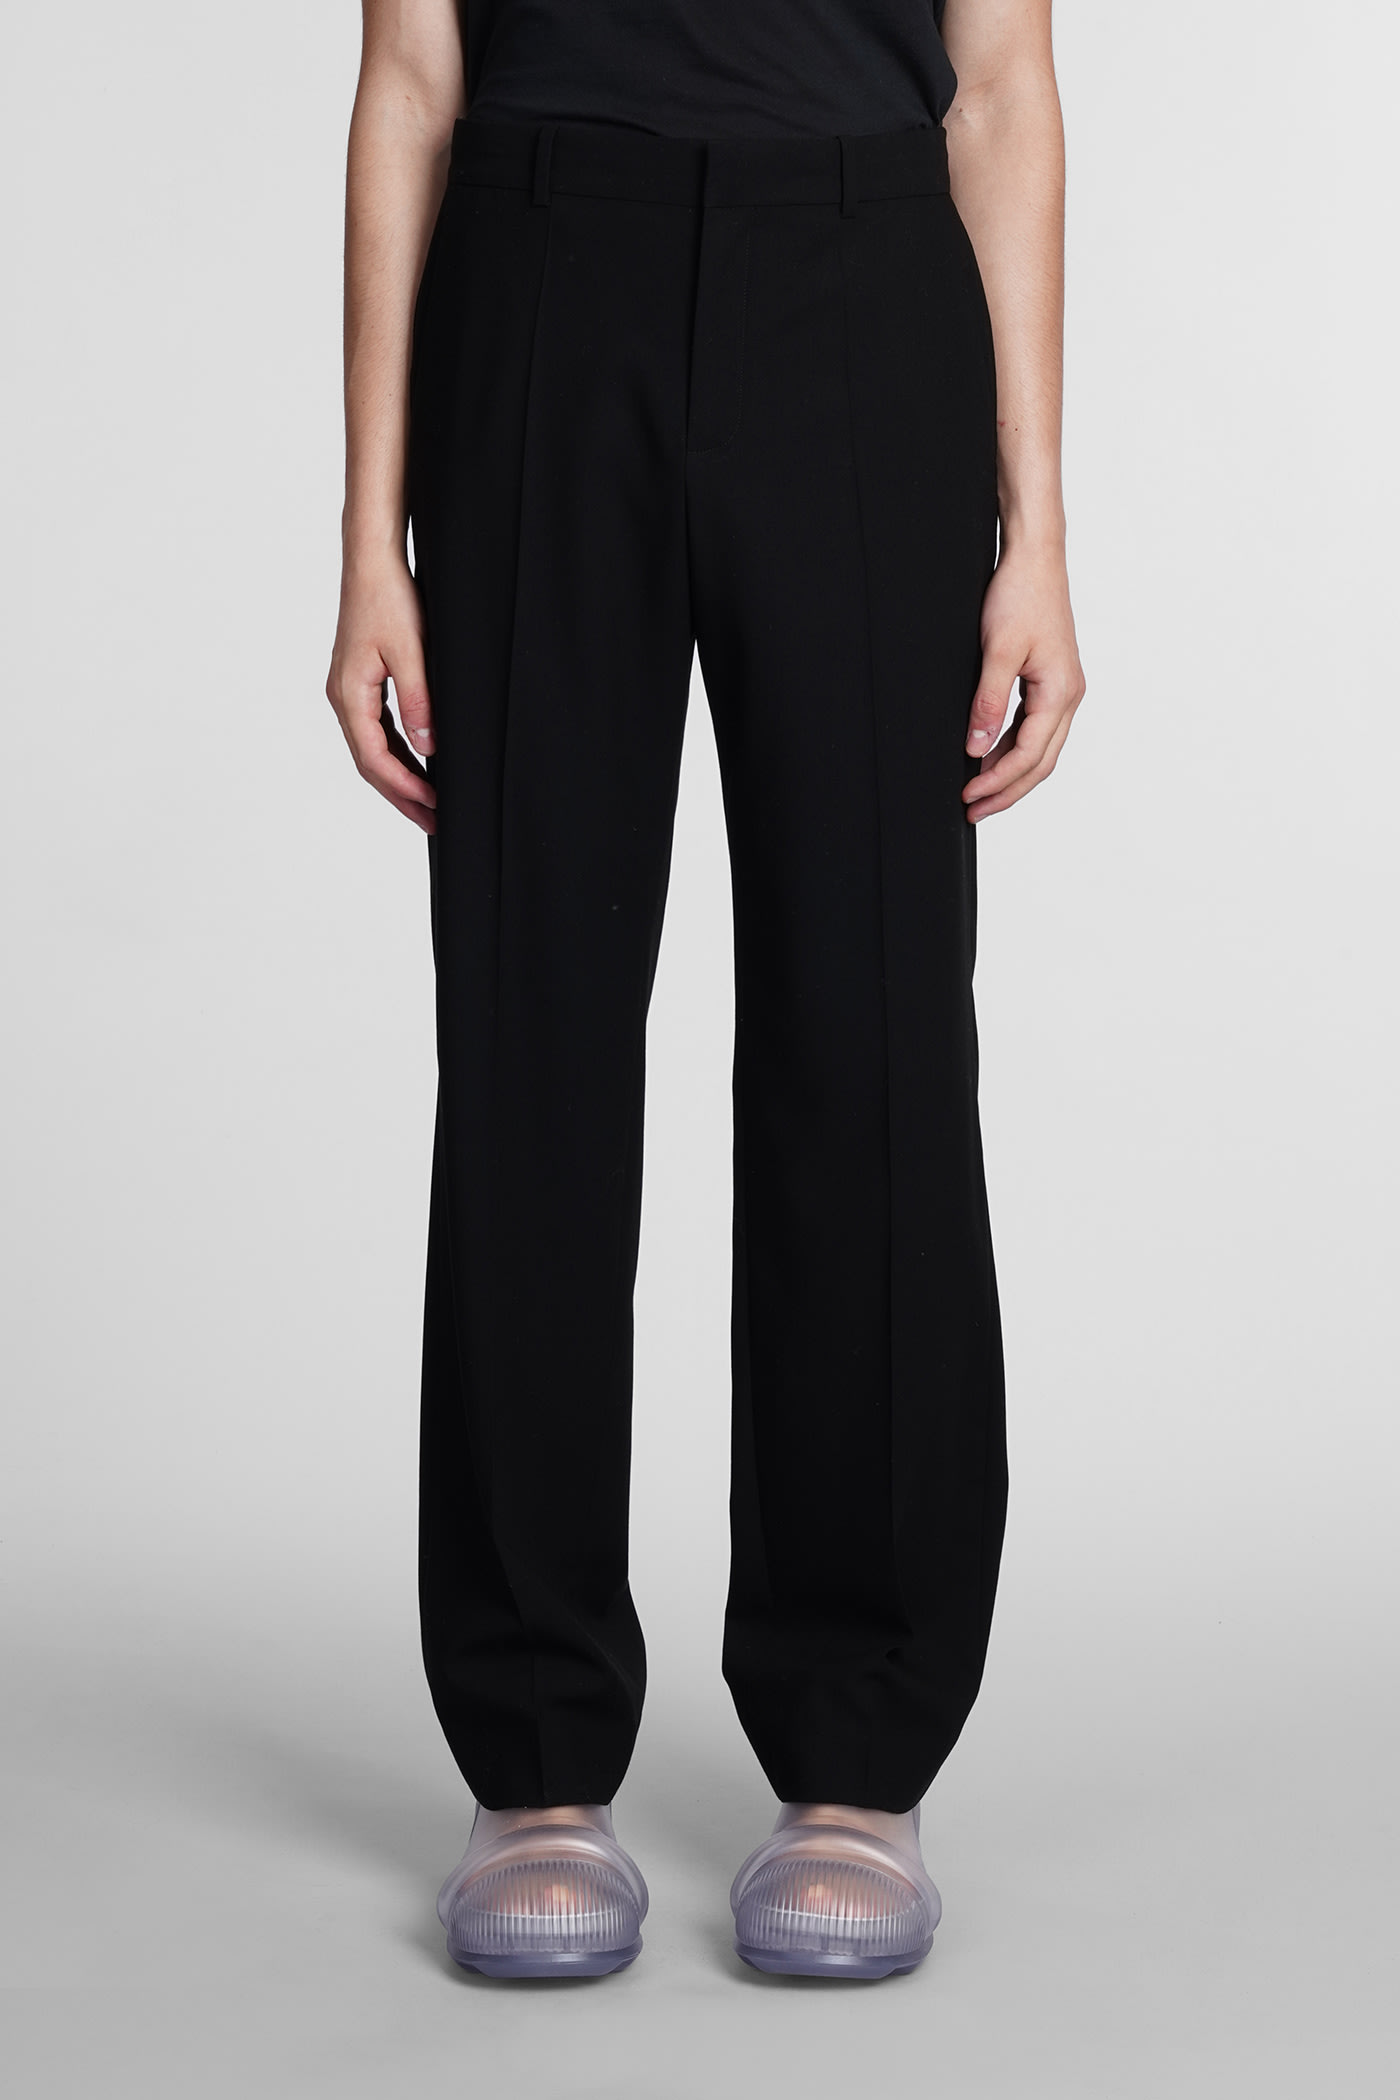 Loewe Pants In Black Polyester